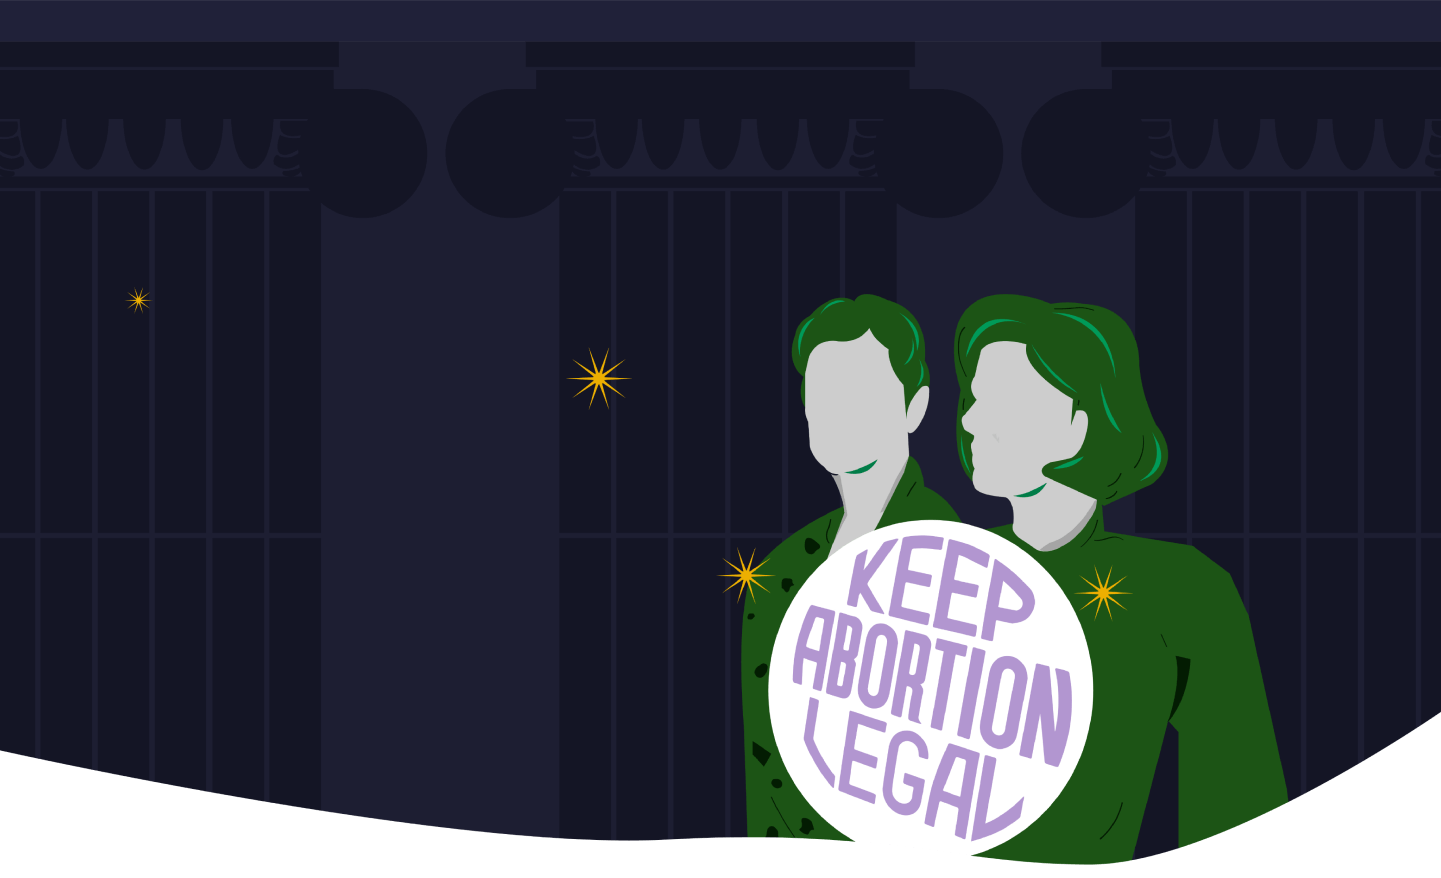 Dibujo de #Resistirenverde dos personas con un cartel que dice "Keep abortion legal".